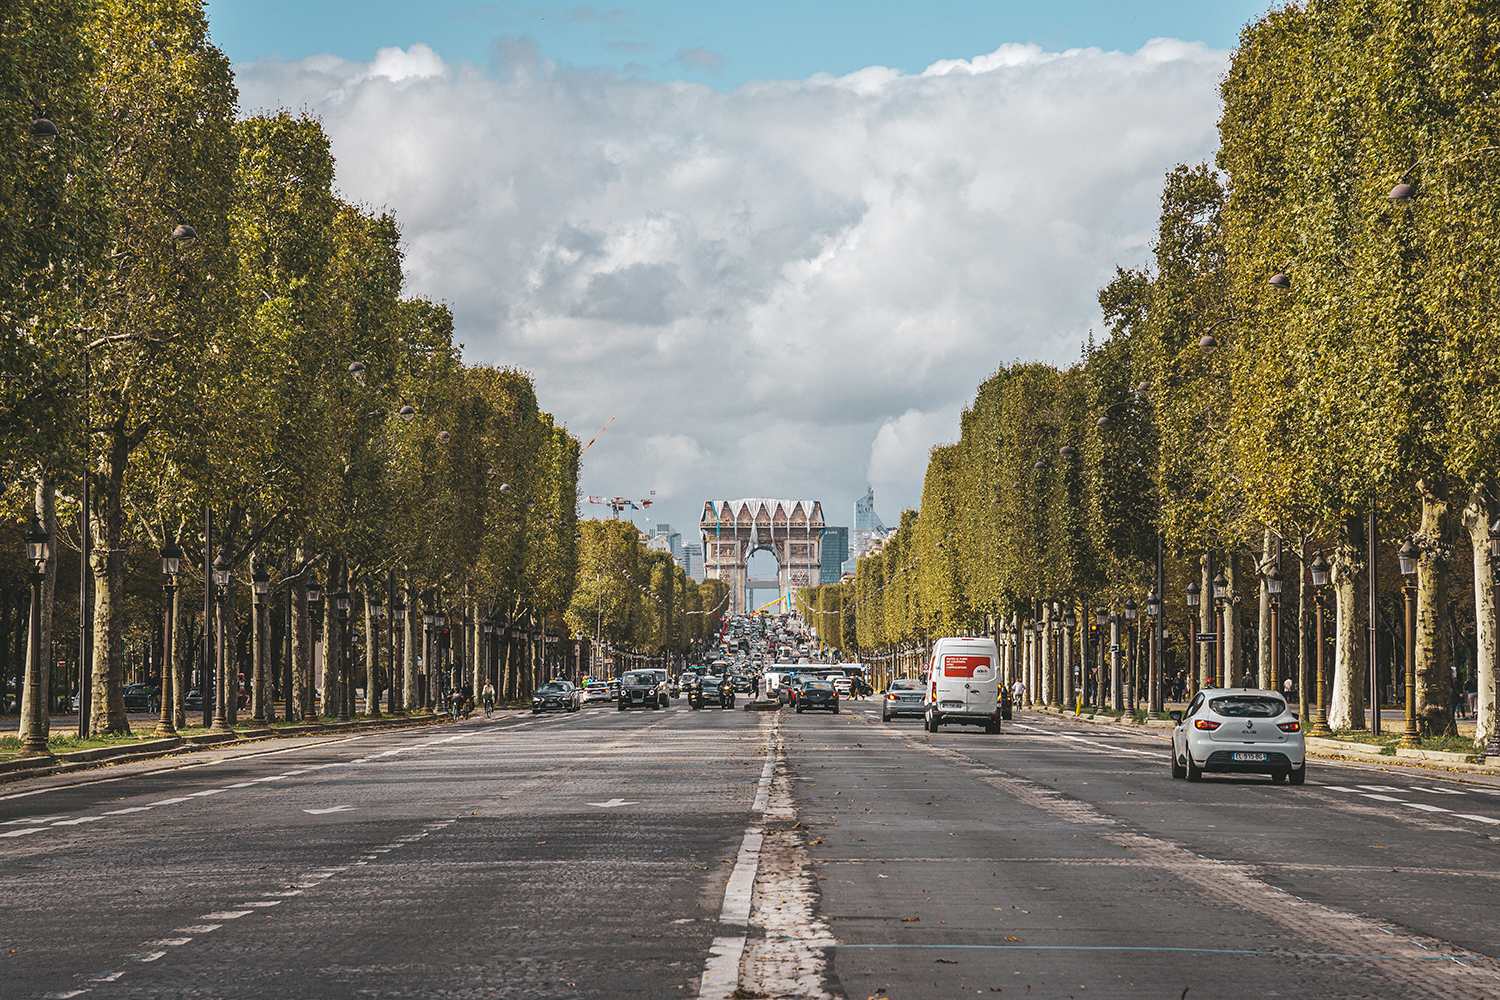 Champs Élysées de Paris 
© Marielle Janotta - My Travel Island